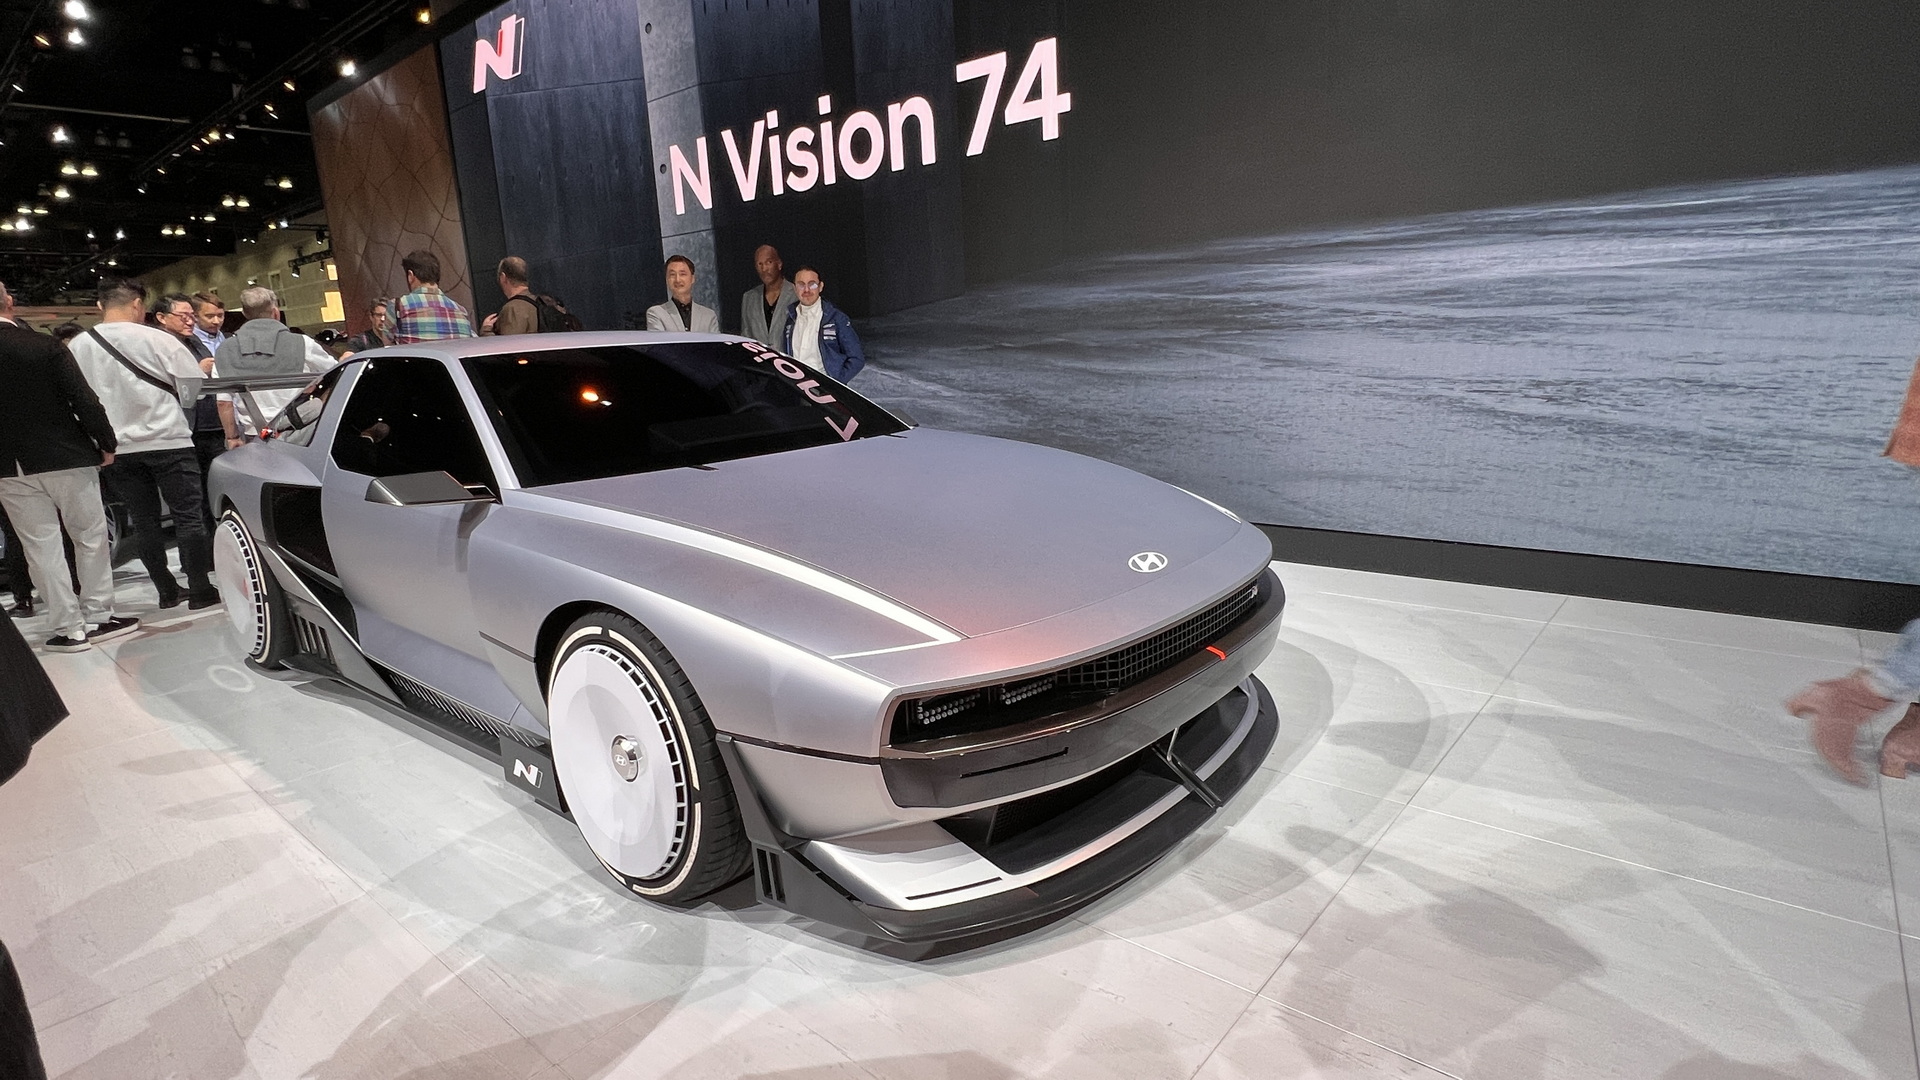 هيونداي N فيجن 74 الاختبارية الجديدة كلياً هي مستقبل سيارات N الرياضية 9